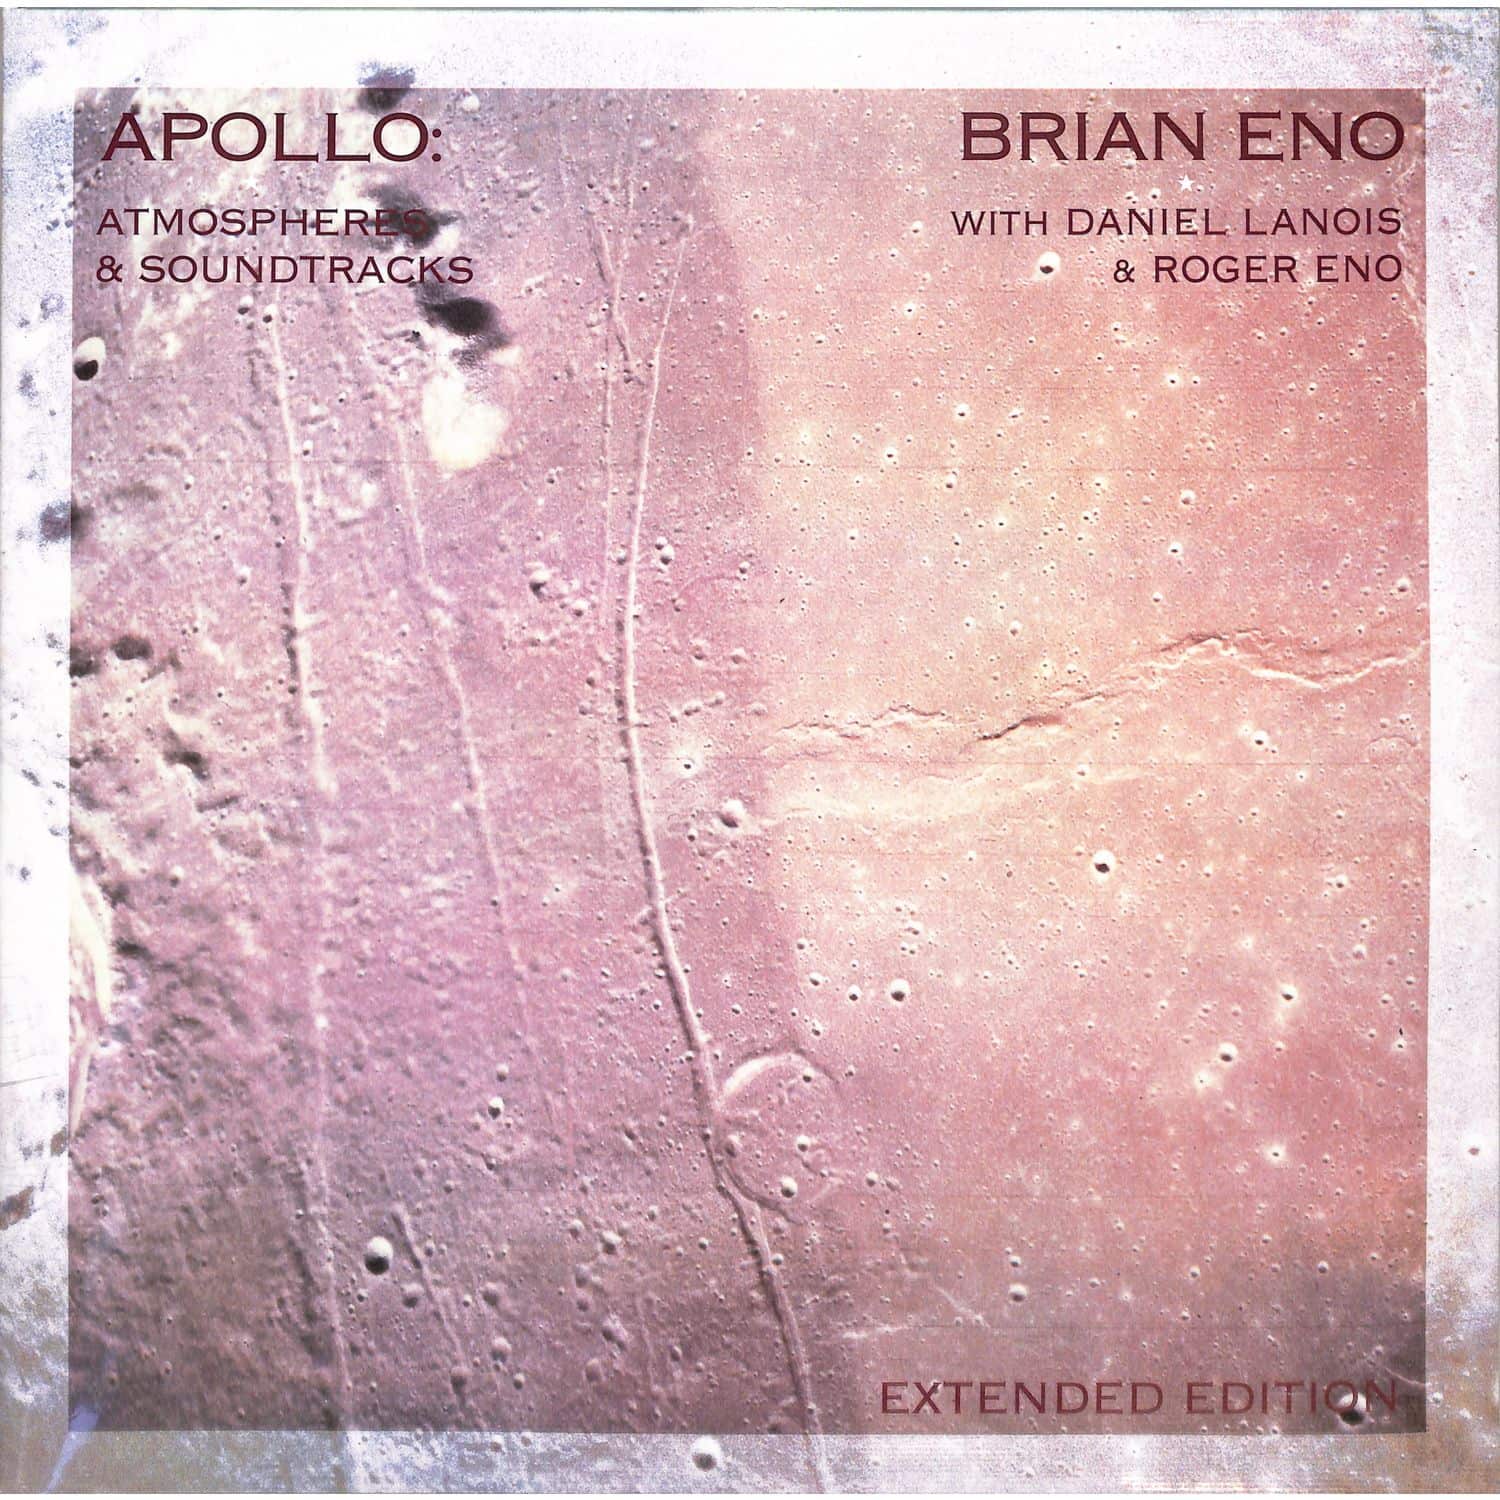 Brian Eno - APOLLO: ATMOSPHERES AND SOUNDTRACKS 